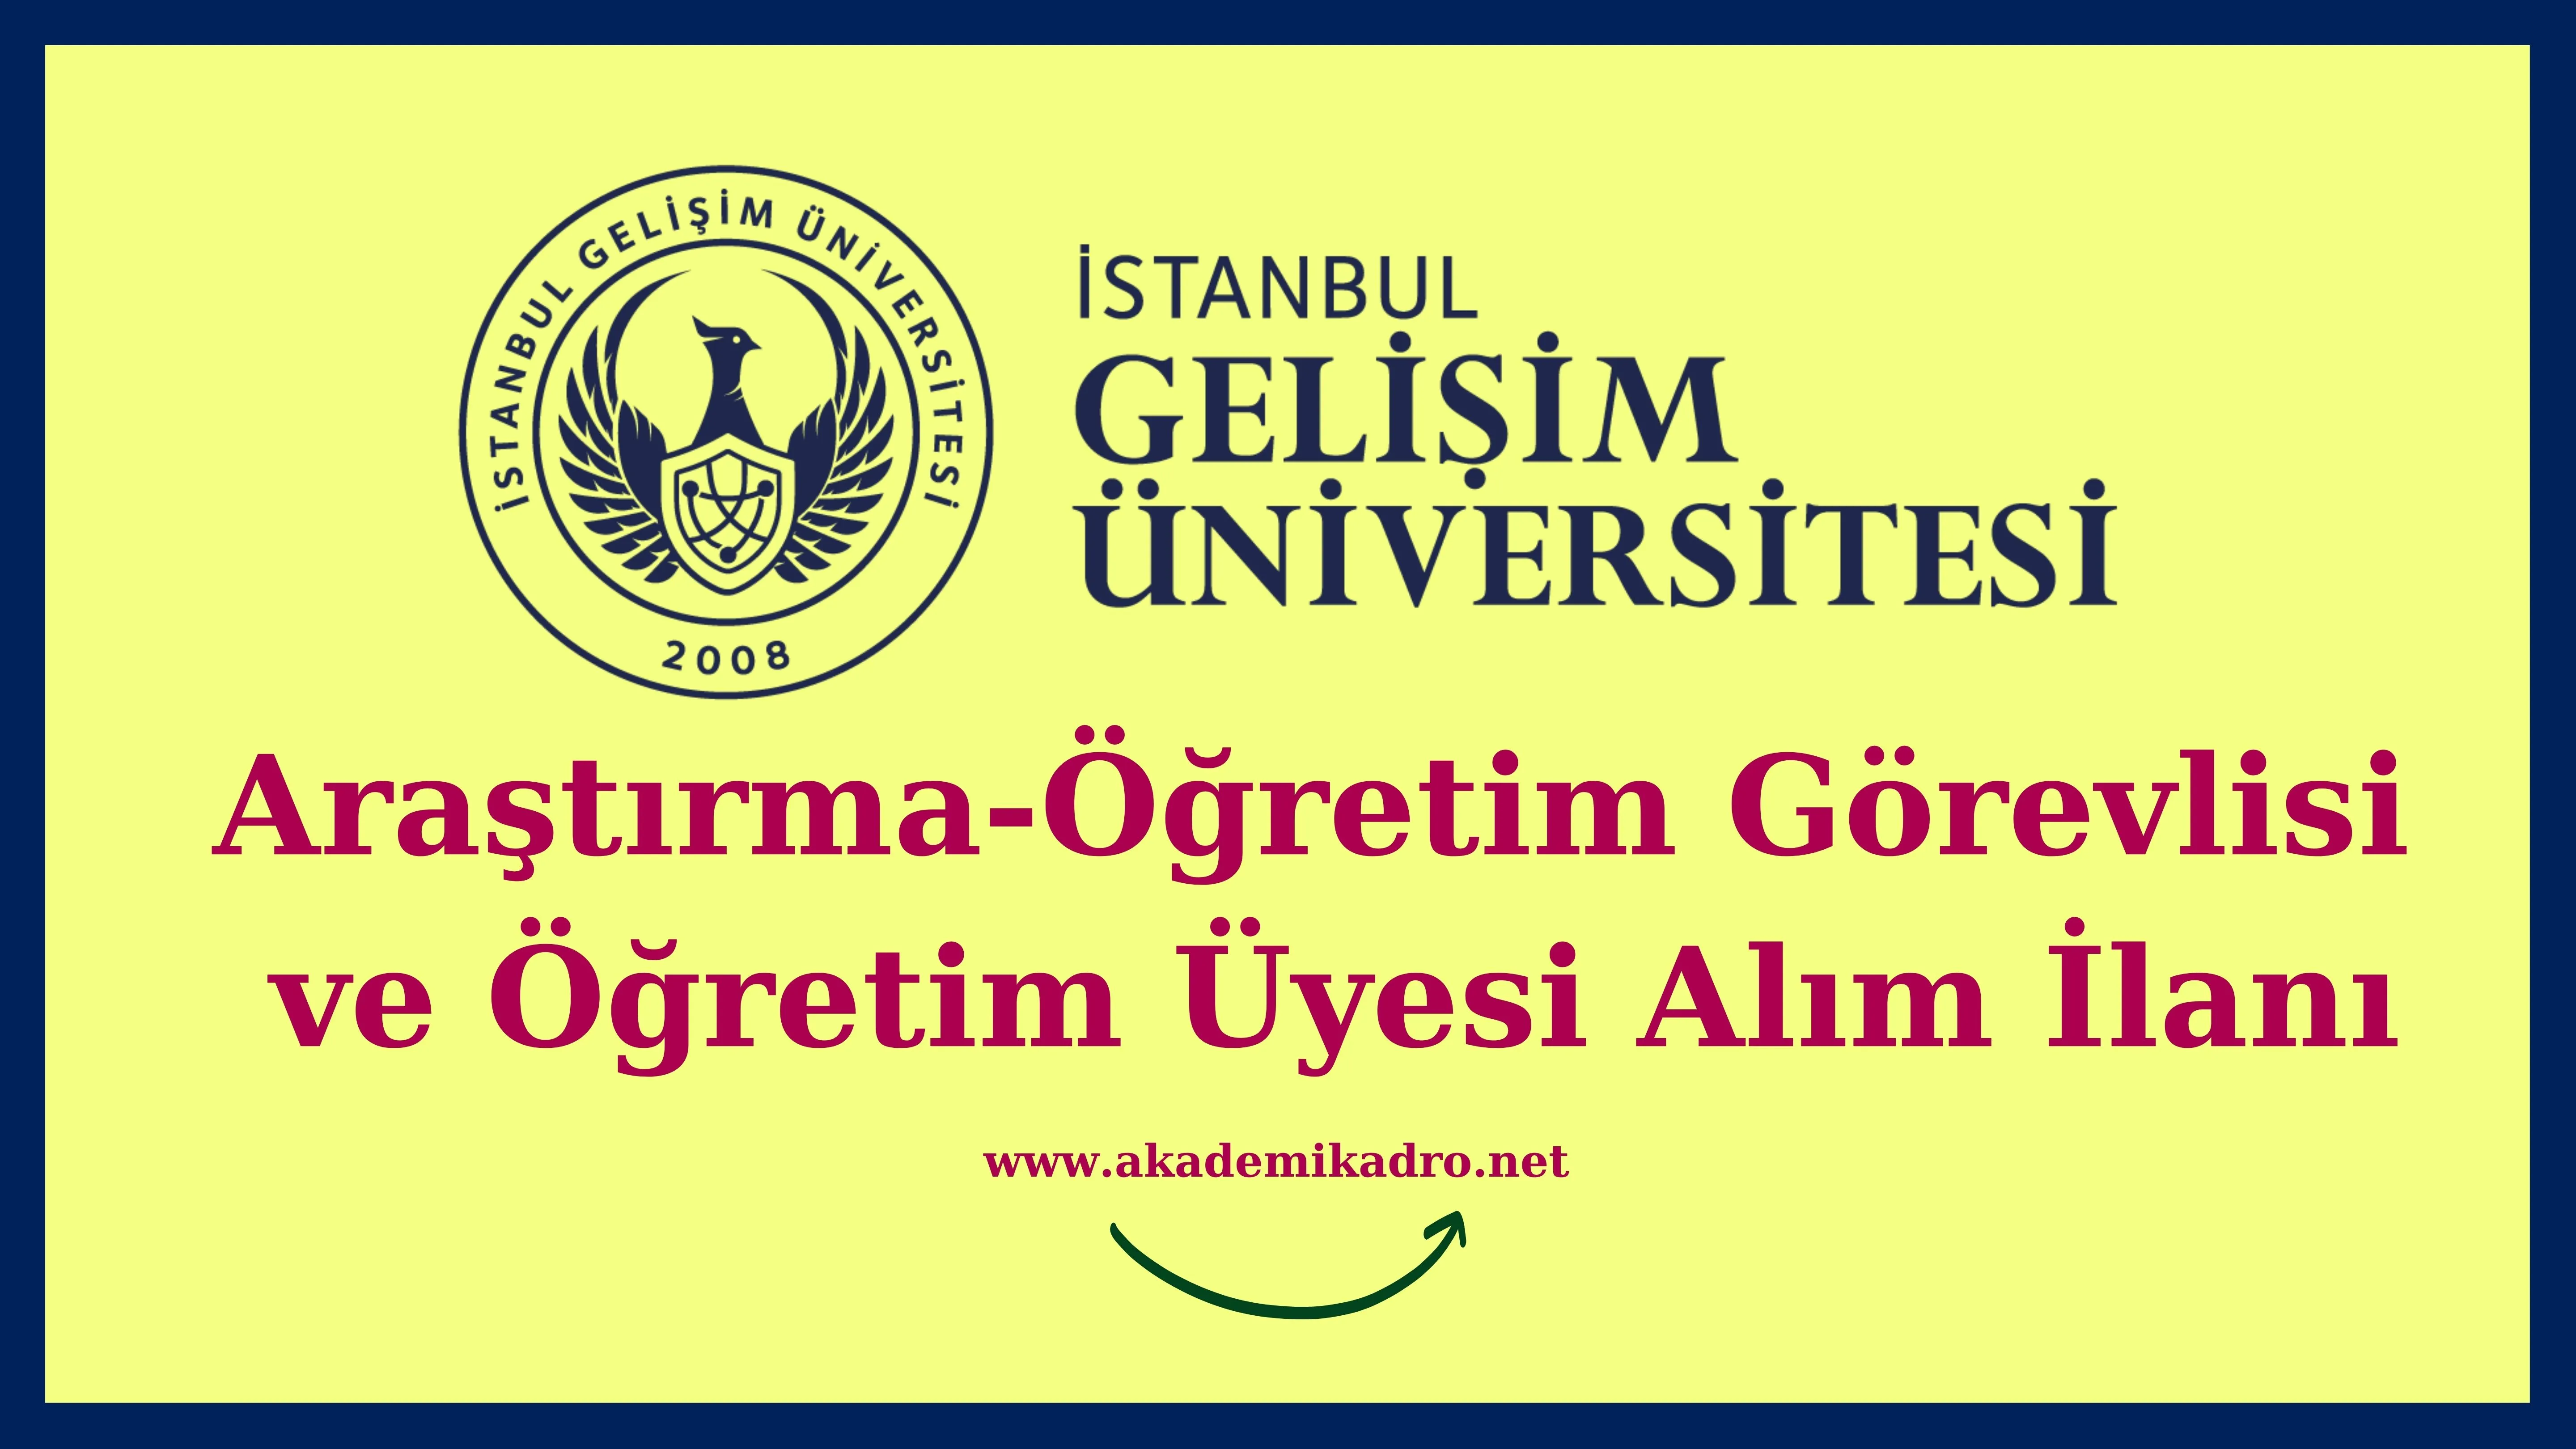 İstanbul Gelişim Üniversitesi 20 Öğretim görevlisi, 11 Araştırma görevlisi ve birçok alandan 77 Öğretim üyesi alacak.